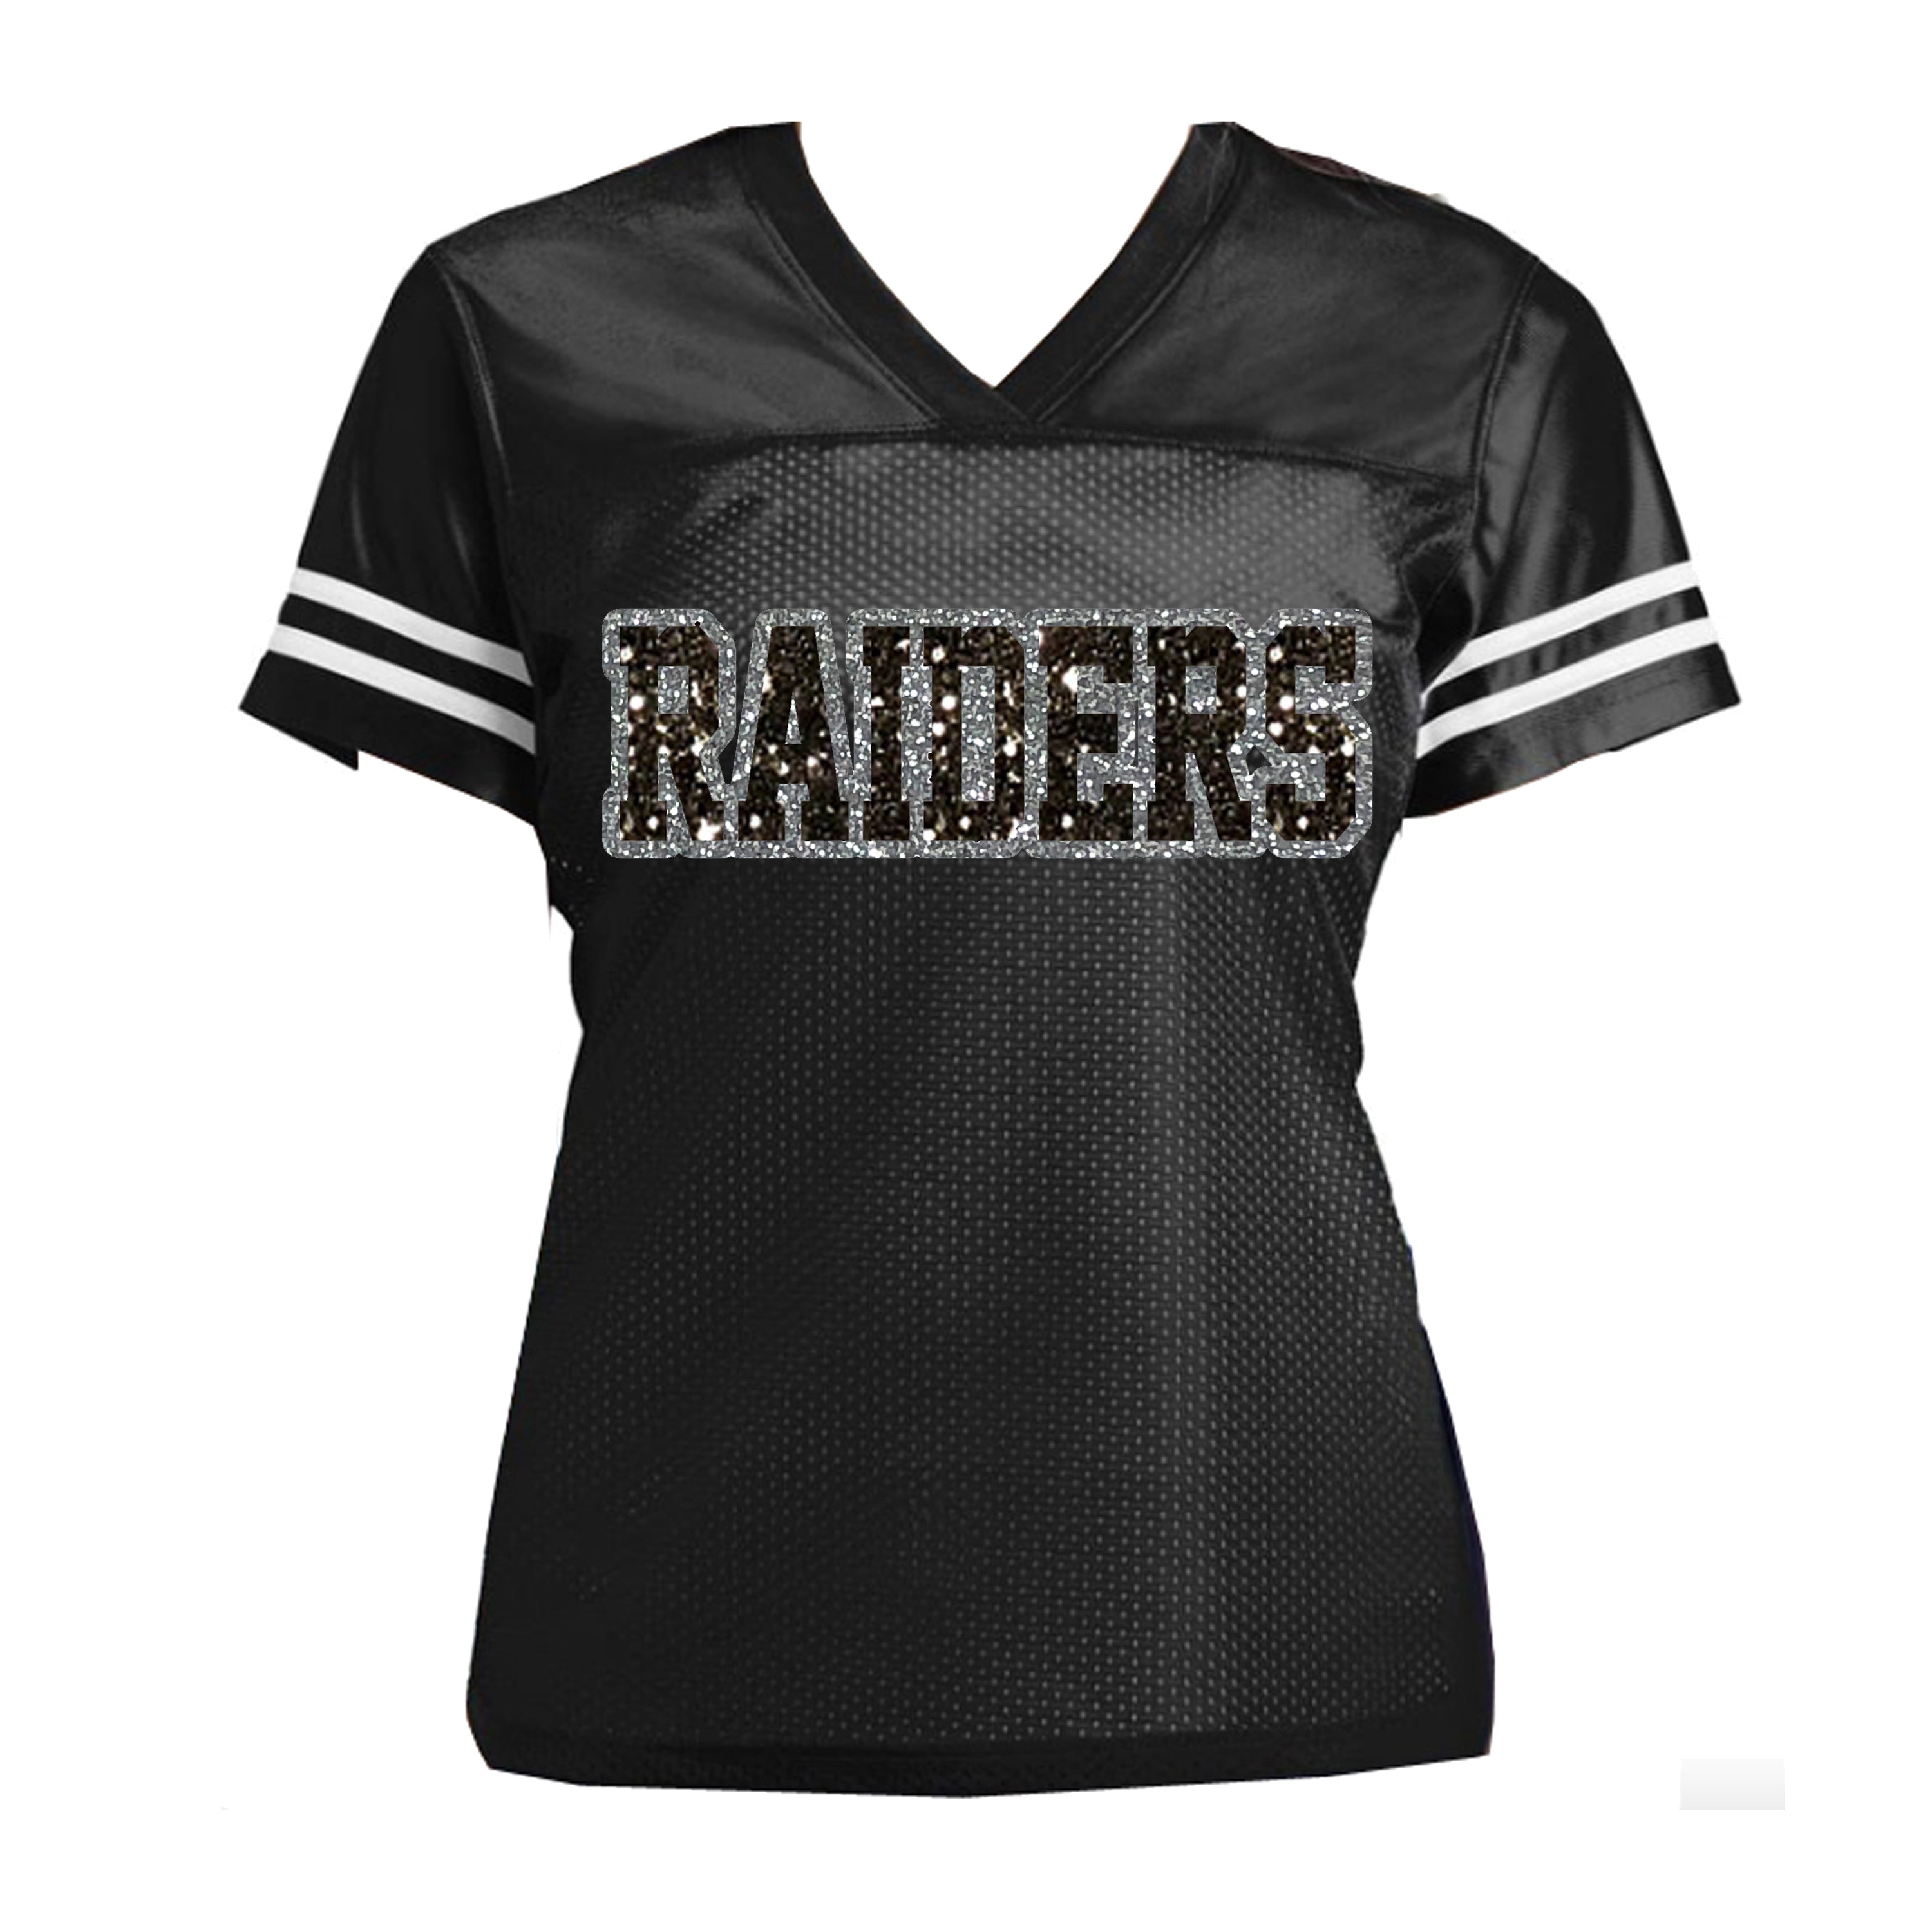 oakland raiders women's jersey